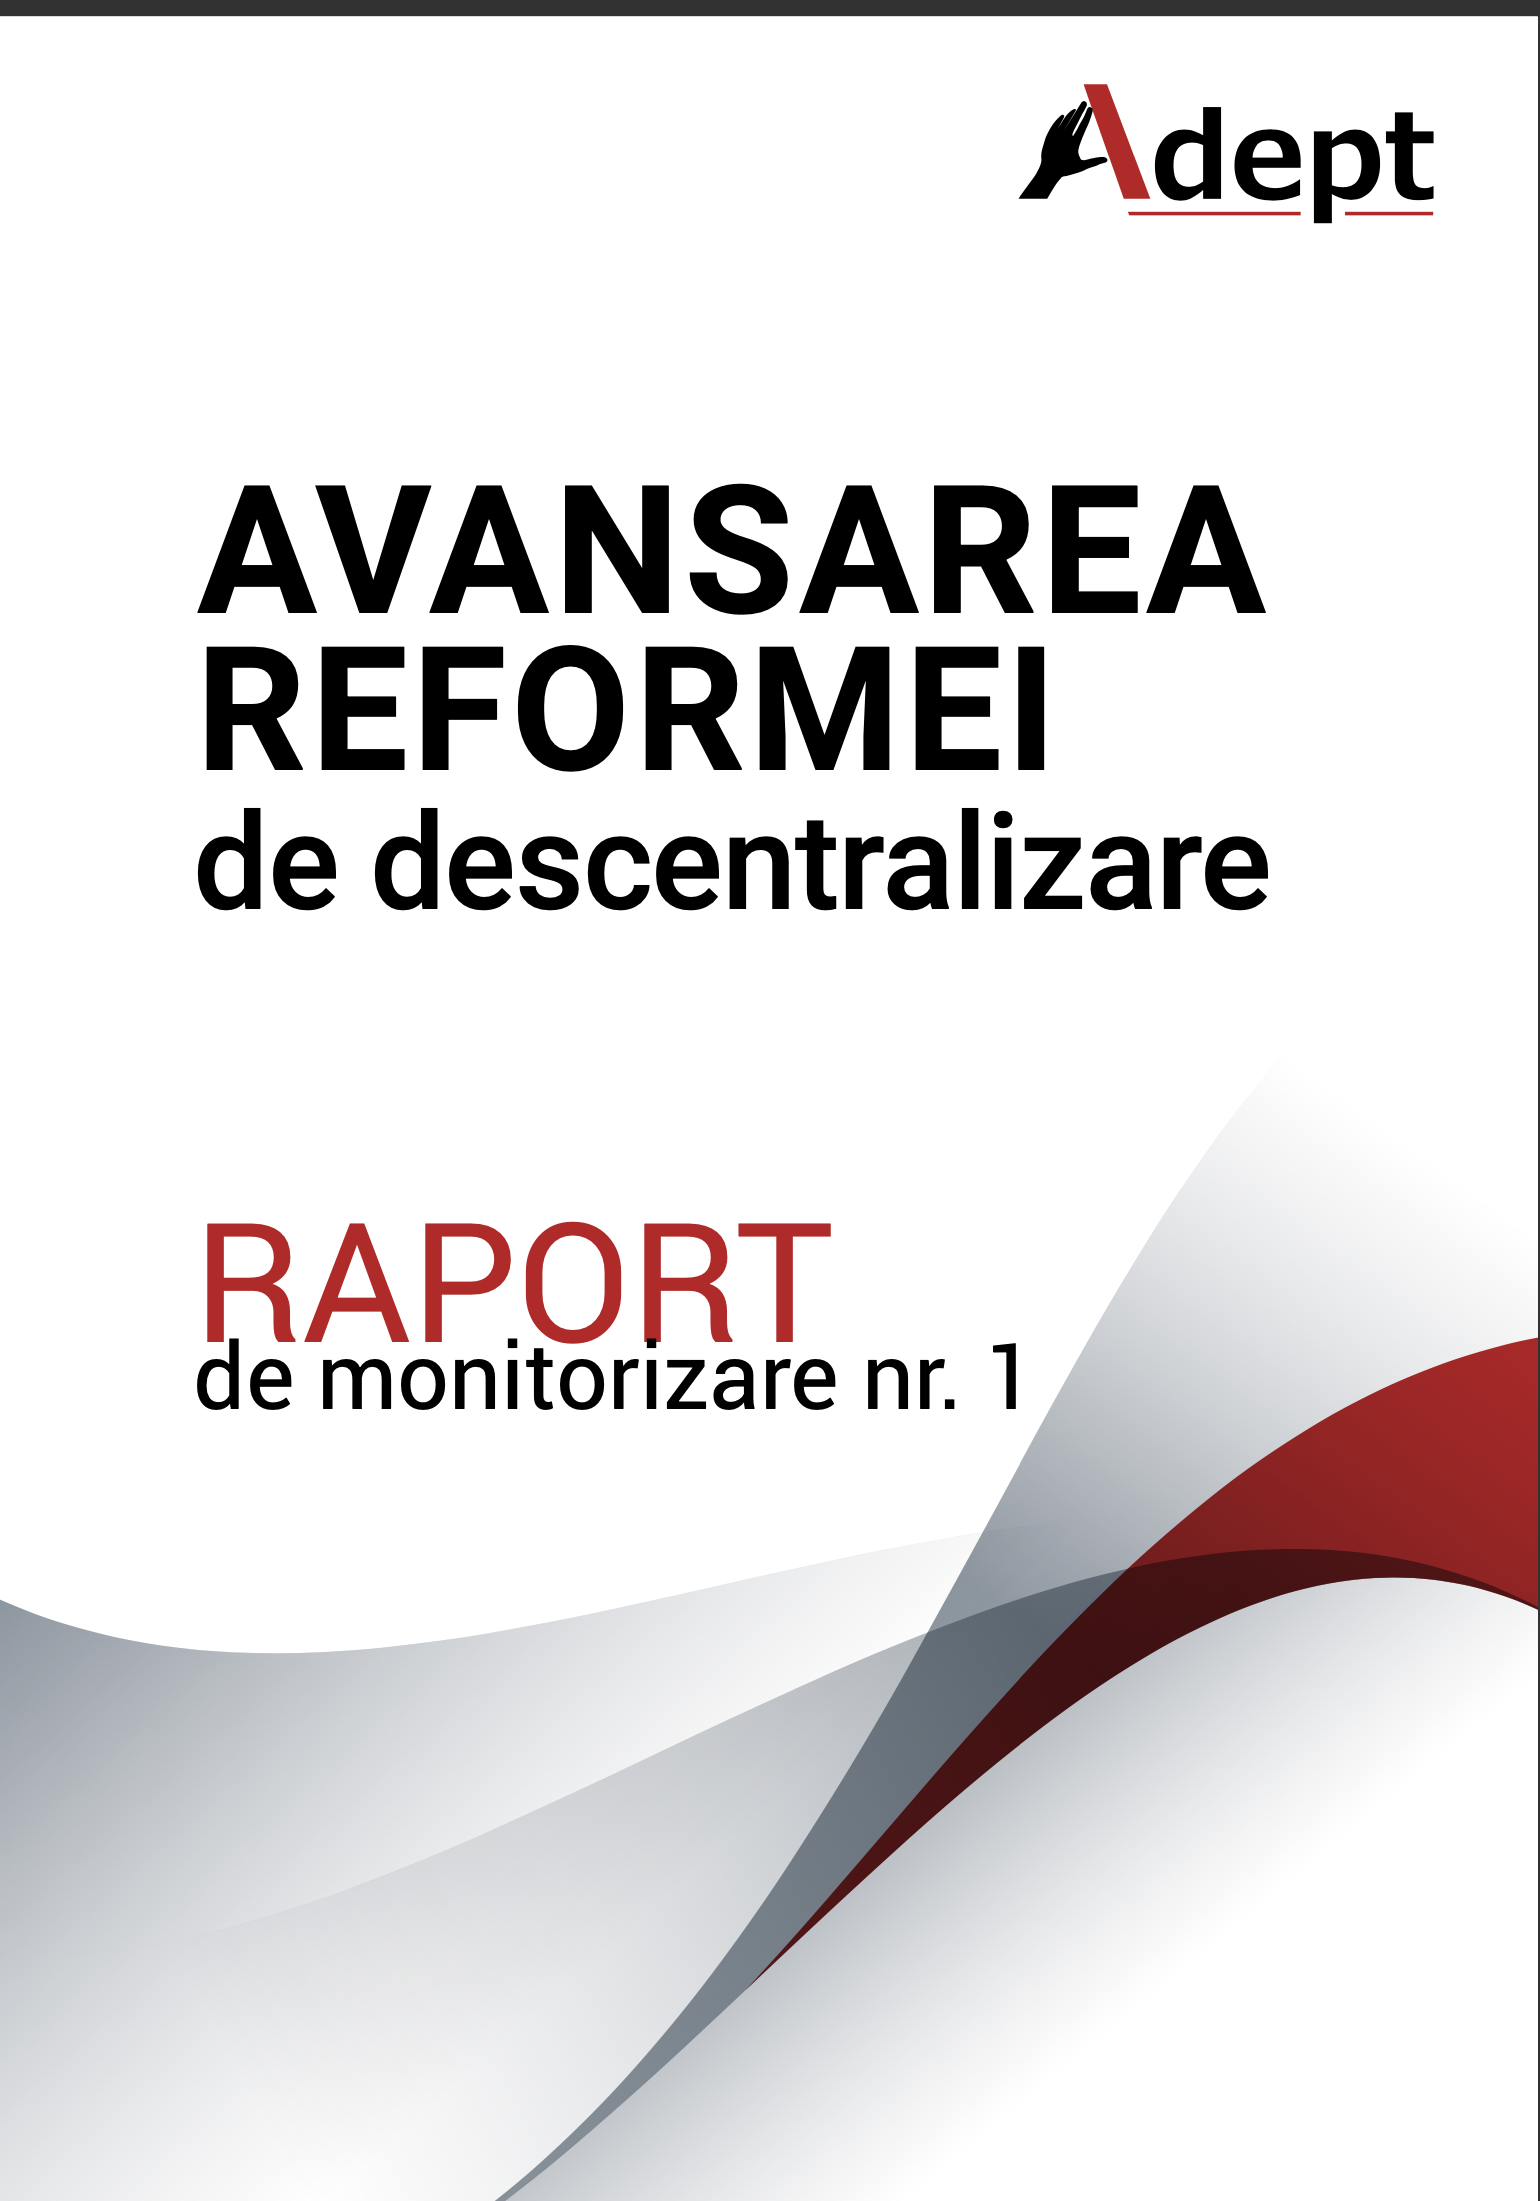 Raportul nr. 1 privind monitorizarea avansării reformei de descentralizare